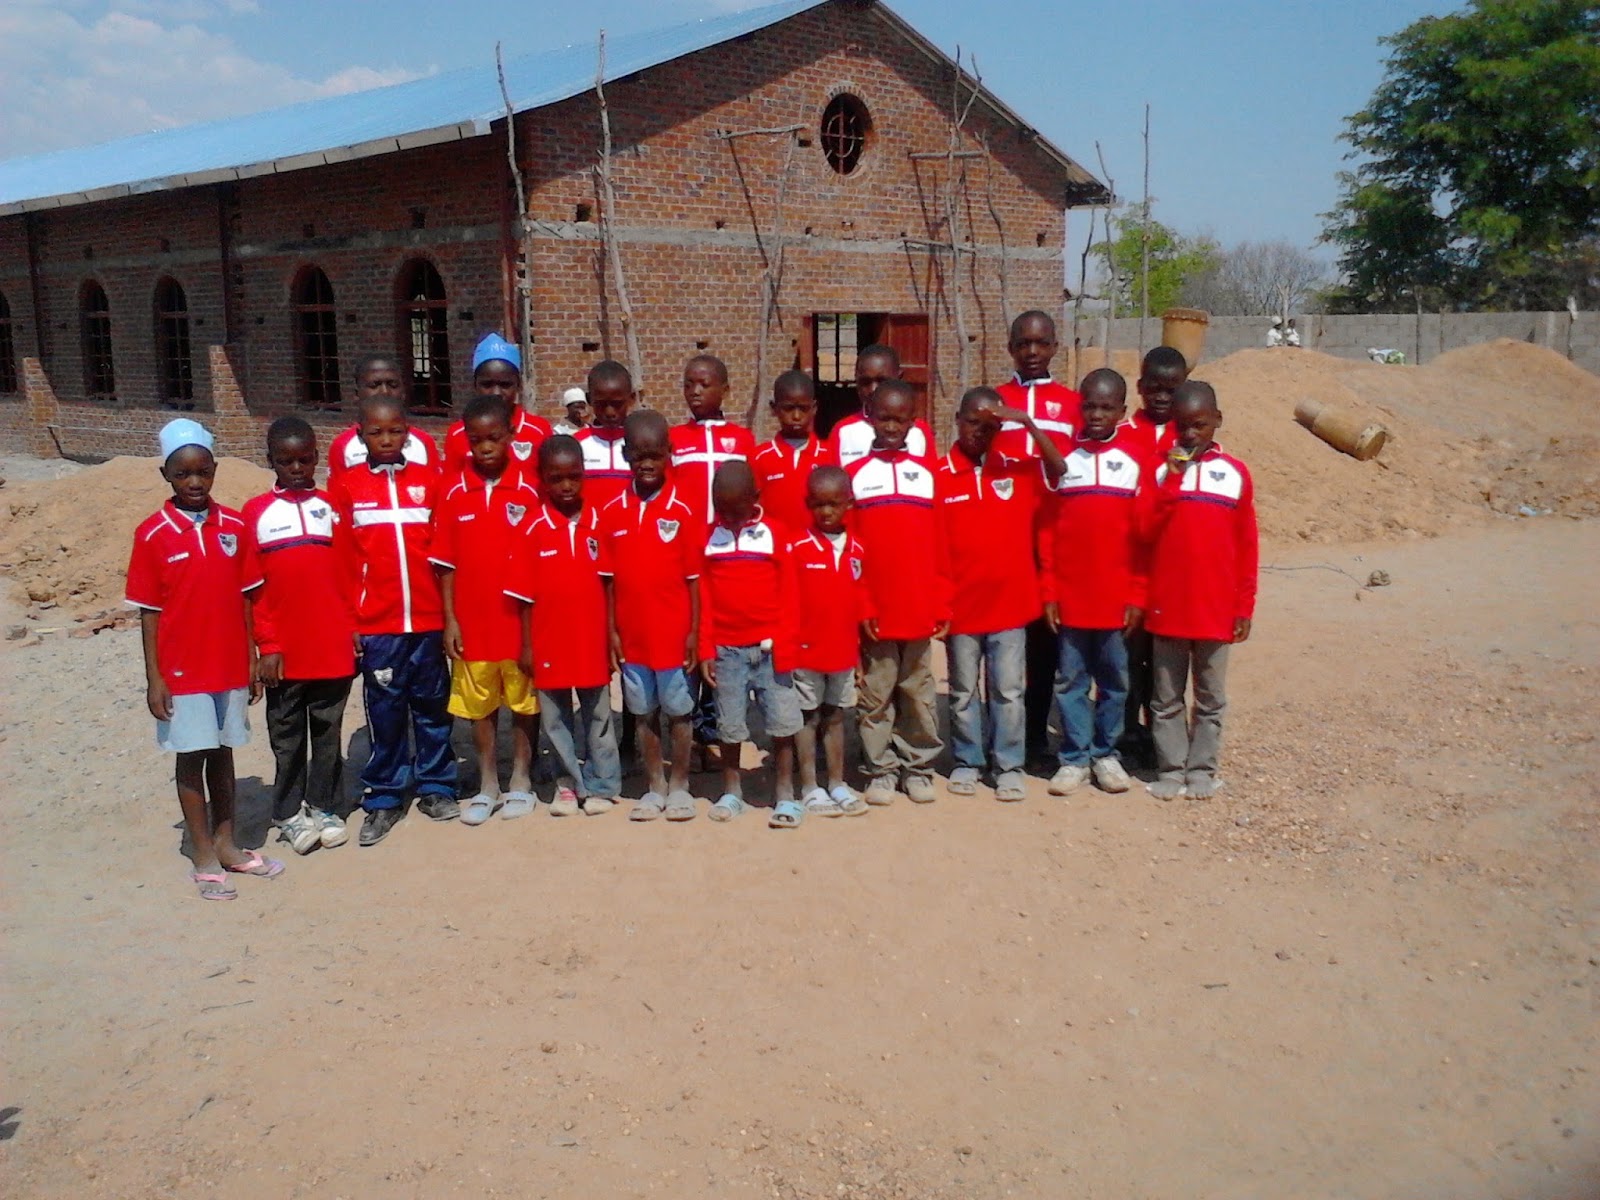 Niños_mision_manolo_ogalla_zimbawe_misionero